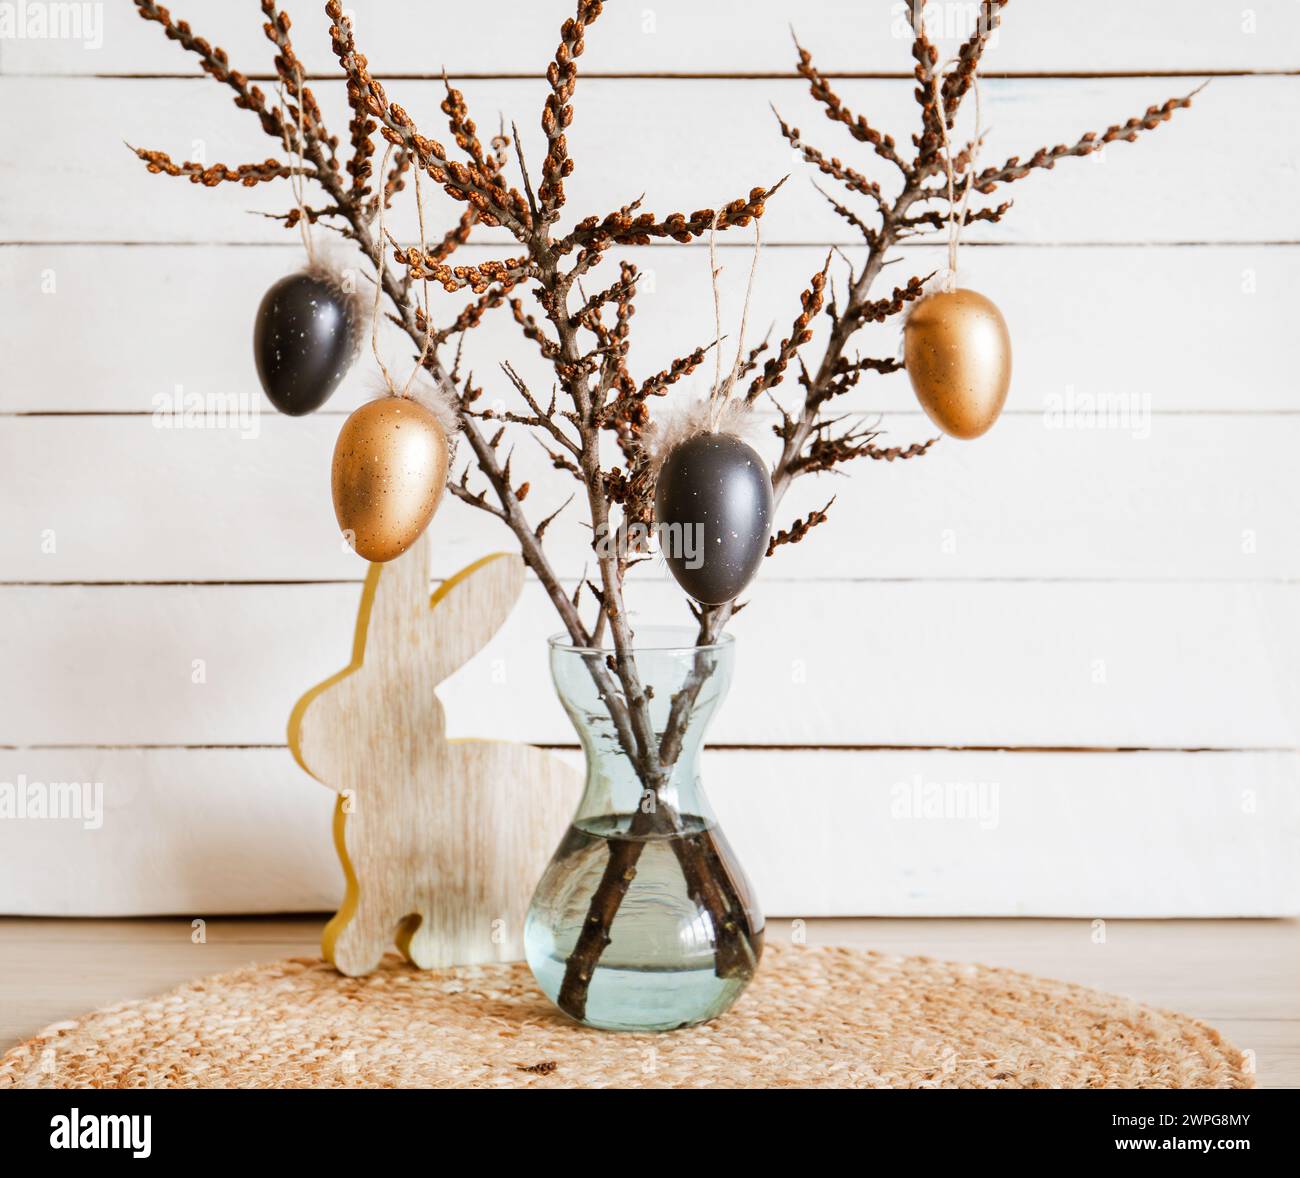 Rami d'albero in vaso con uova di Pasqua nere e di bronzo appese su spago, sfondo bianco rustico in legno. Decorazioni casalinghe minimali. Foto Stock